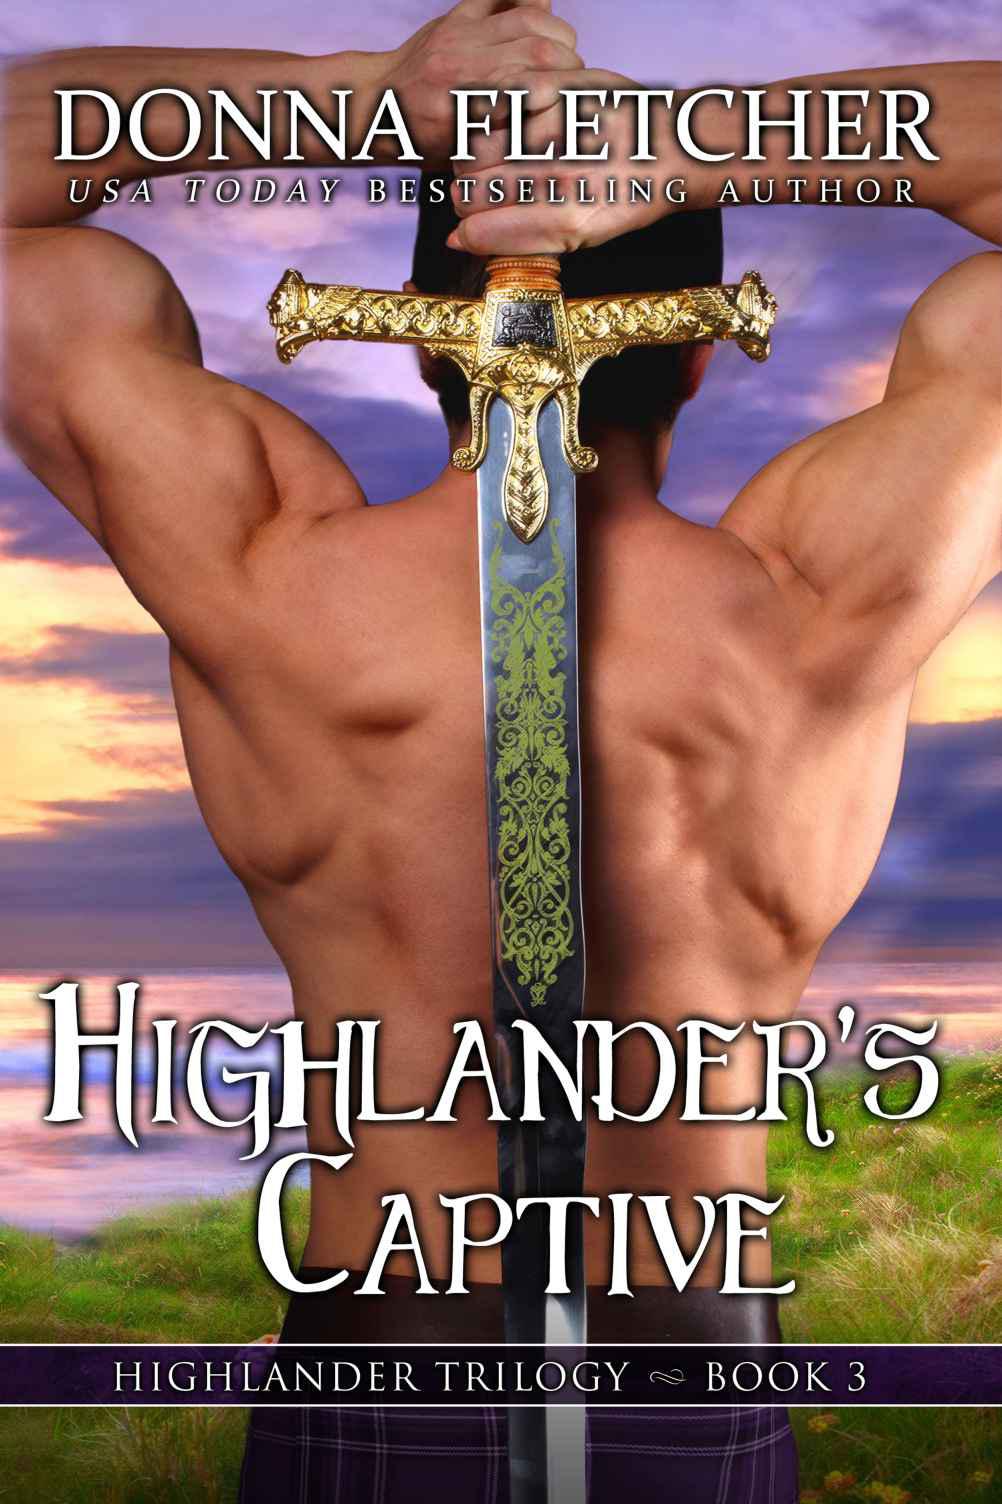 Highlander's Captive by Donna Fletcher